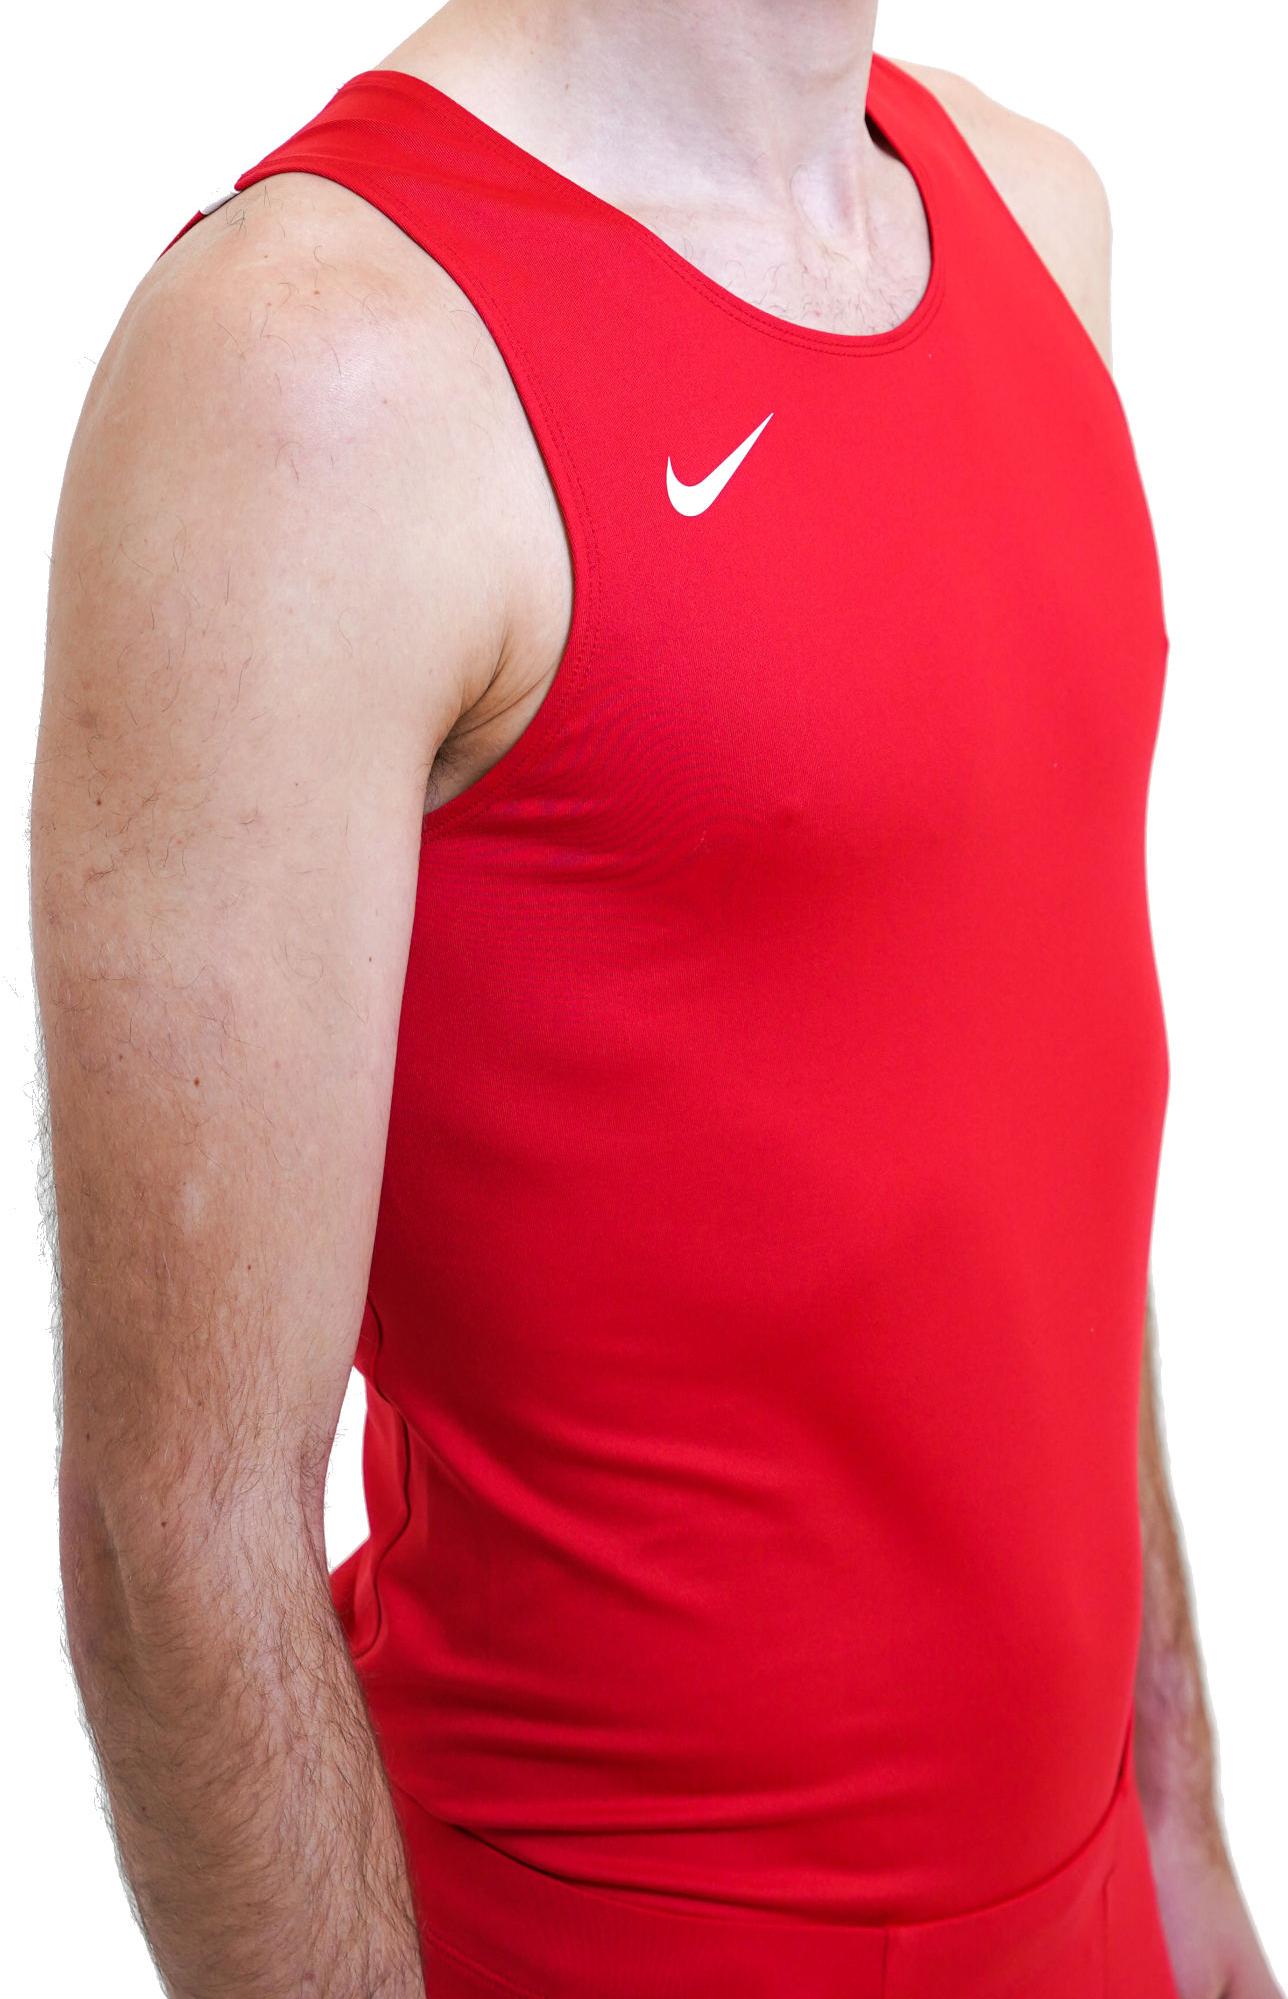 Débardeur Nike Muscle Stock pour Homme - NT0306-010 - Noir